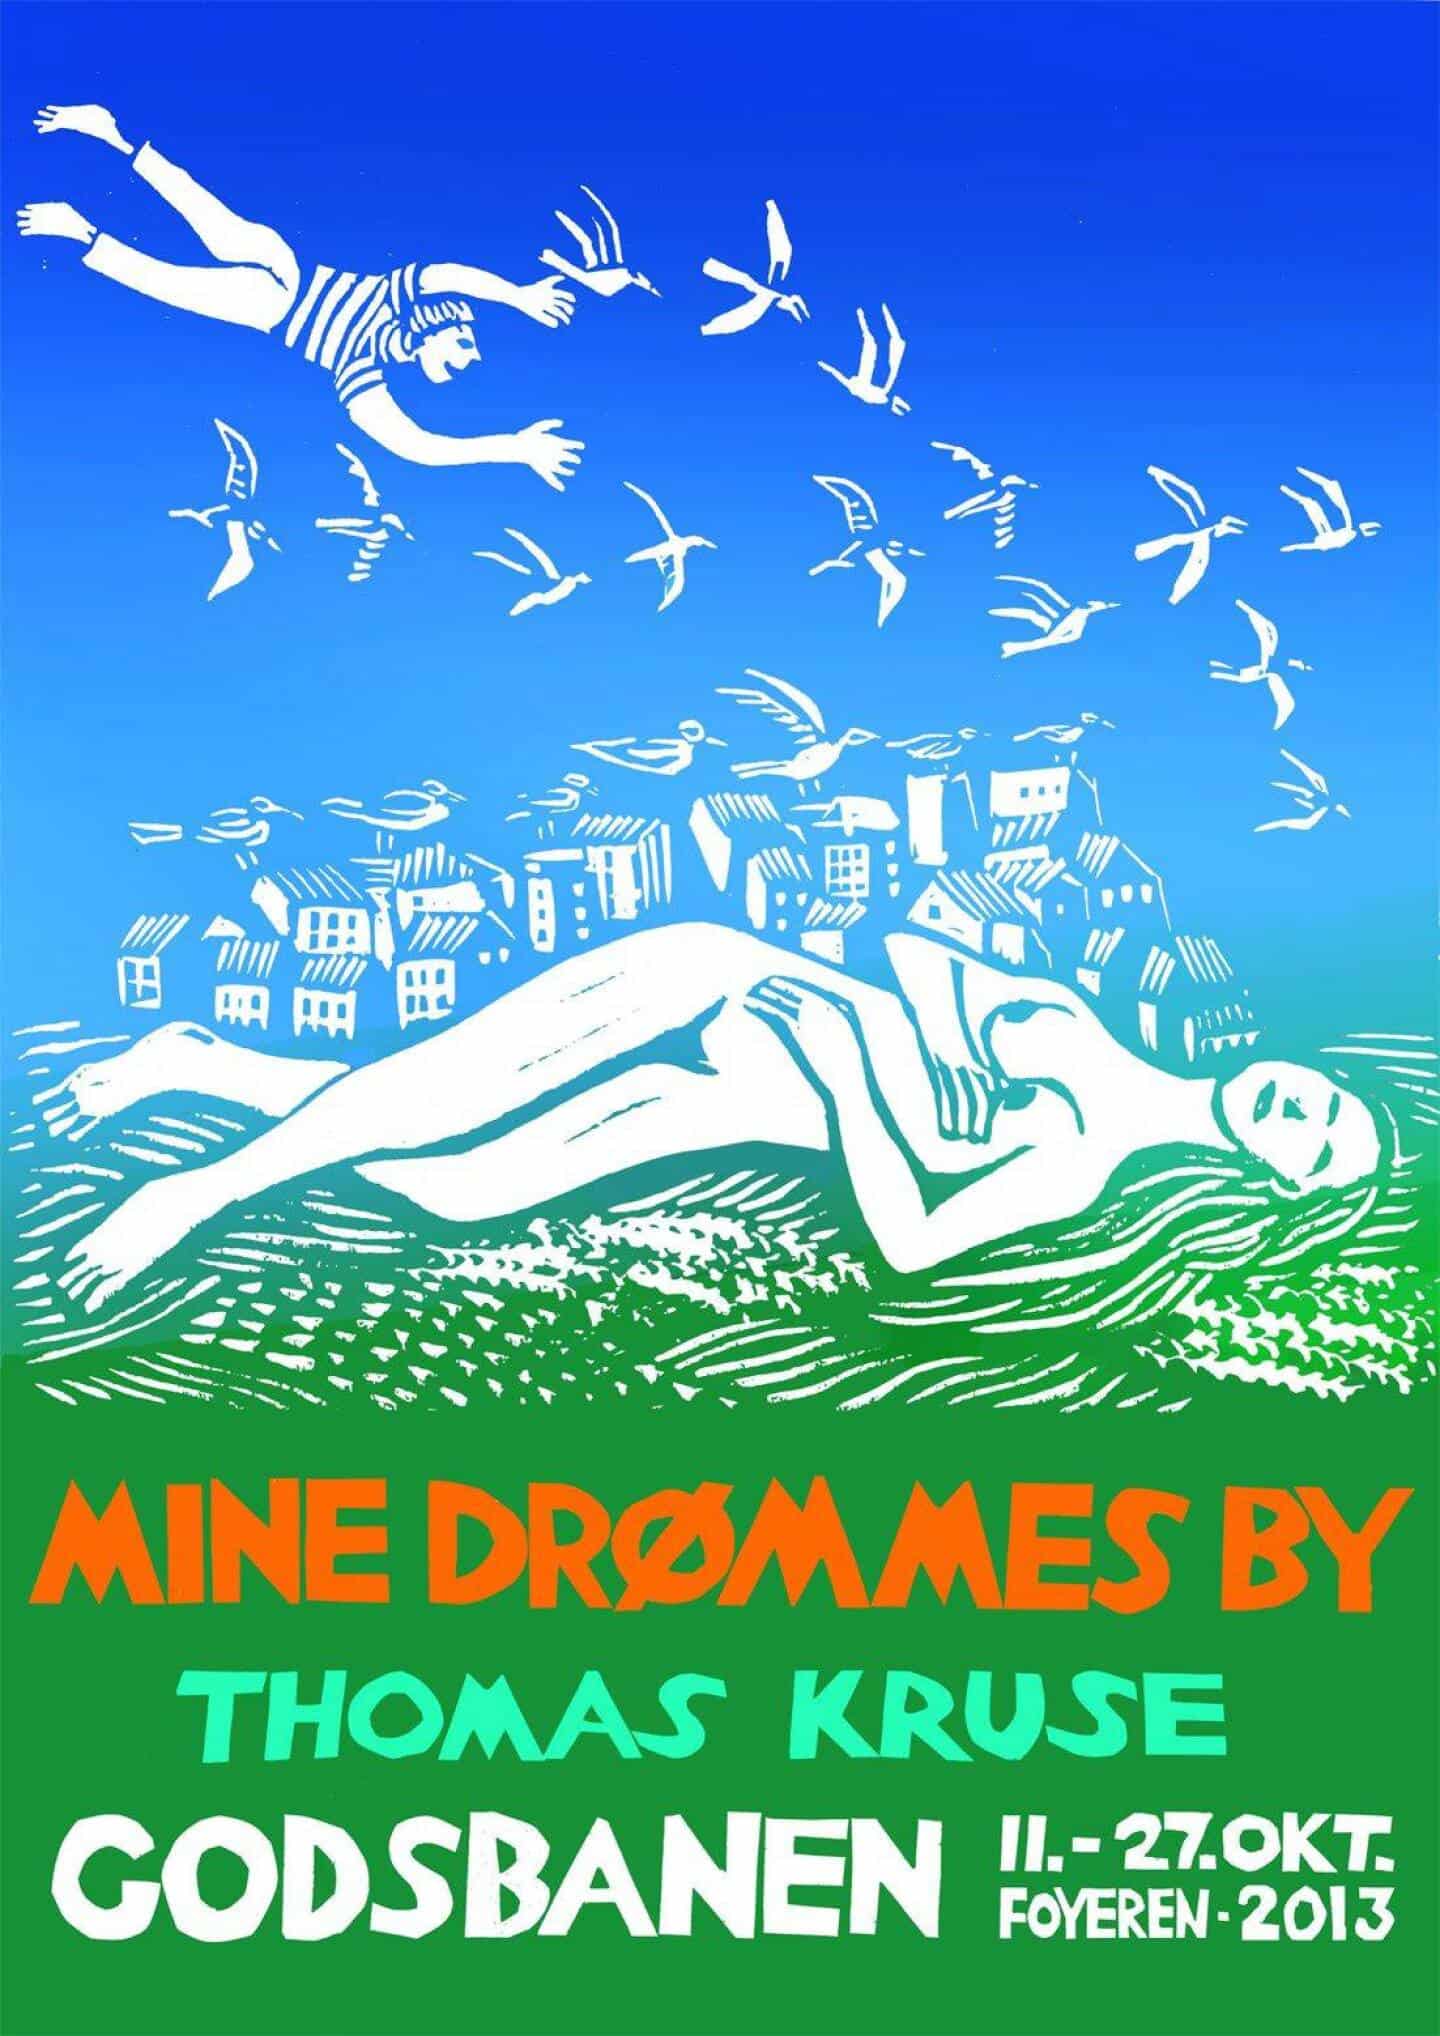 Thomas Kruses drømme om byen |